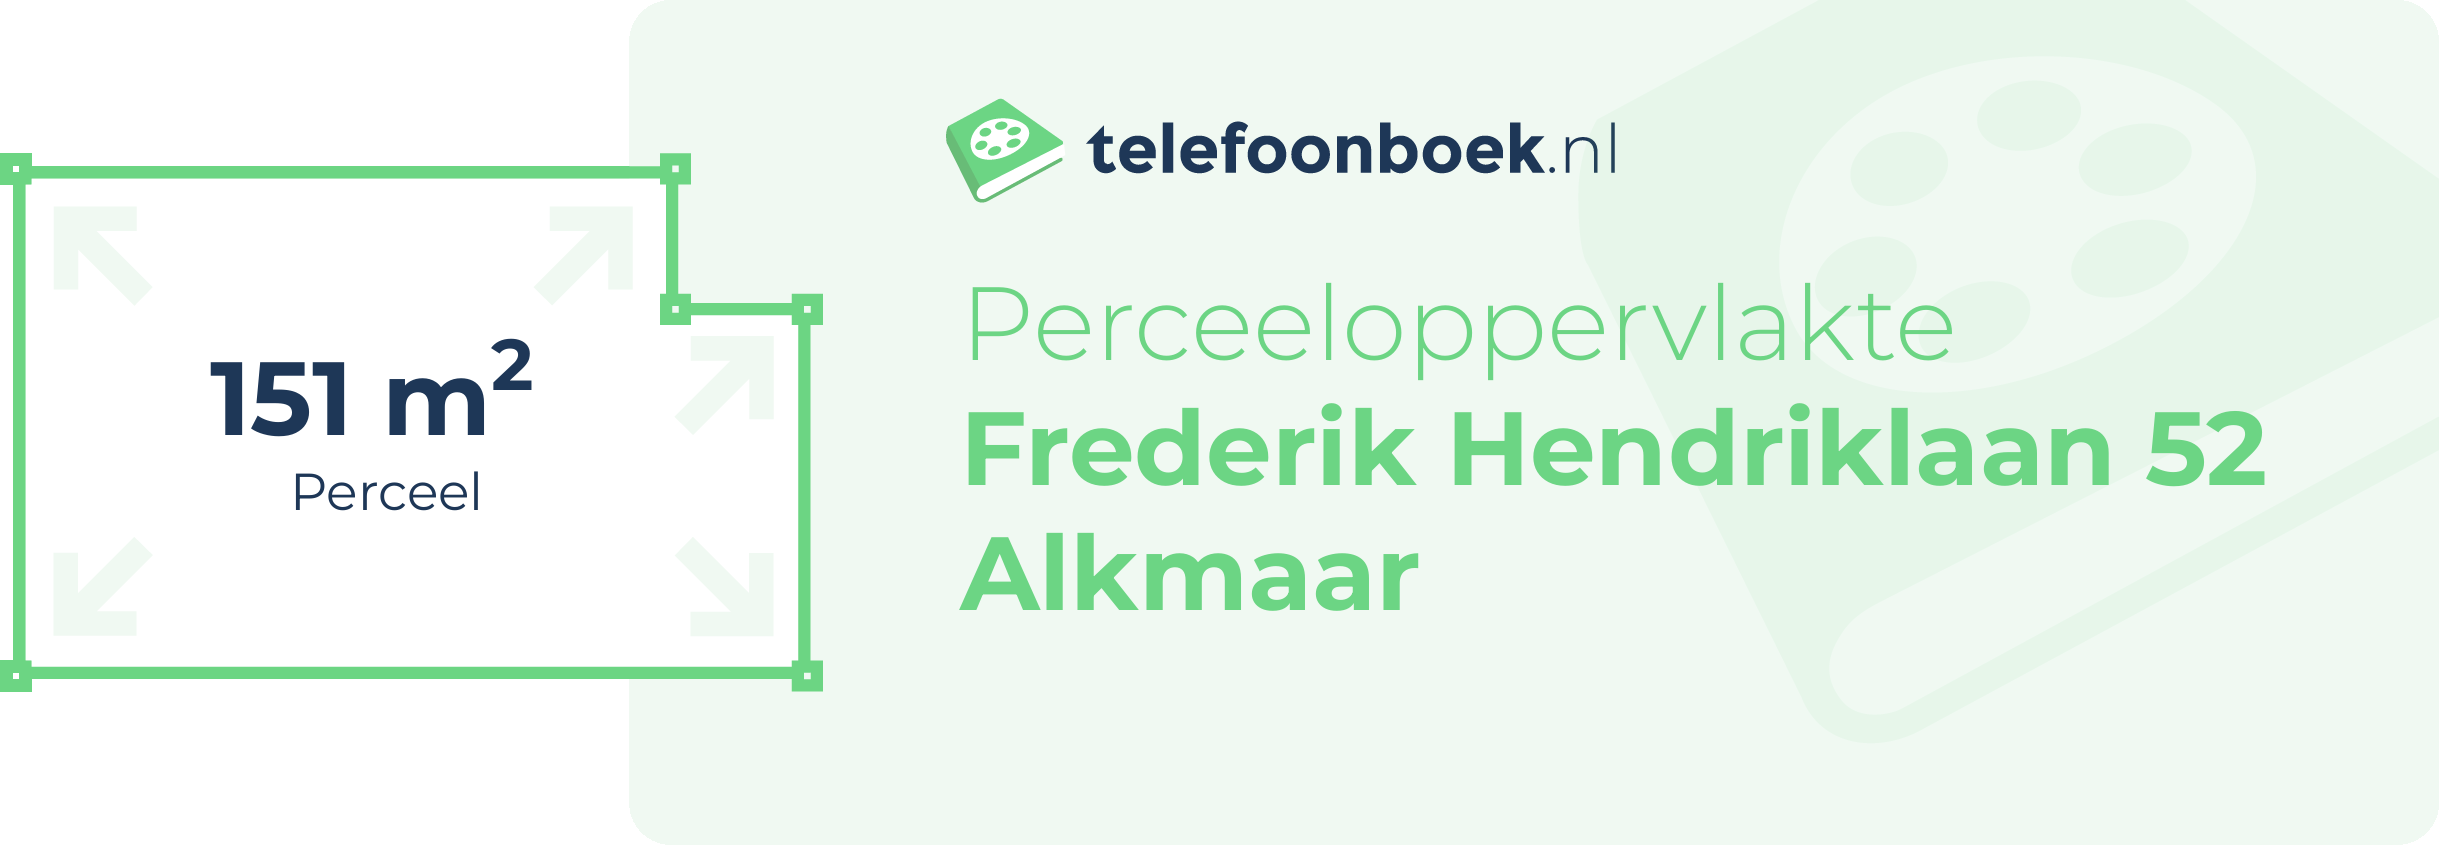 Perceeloppervlakte Frederik Hendriklaan 52 Alkmaar